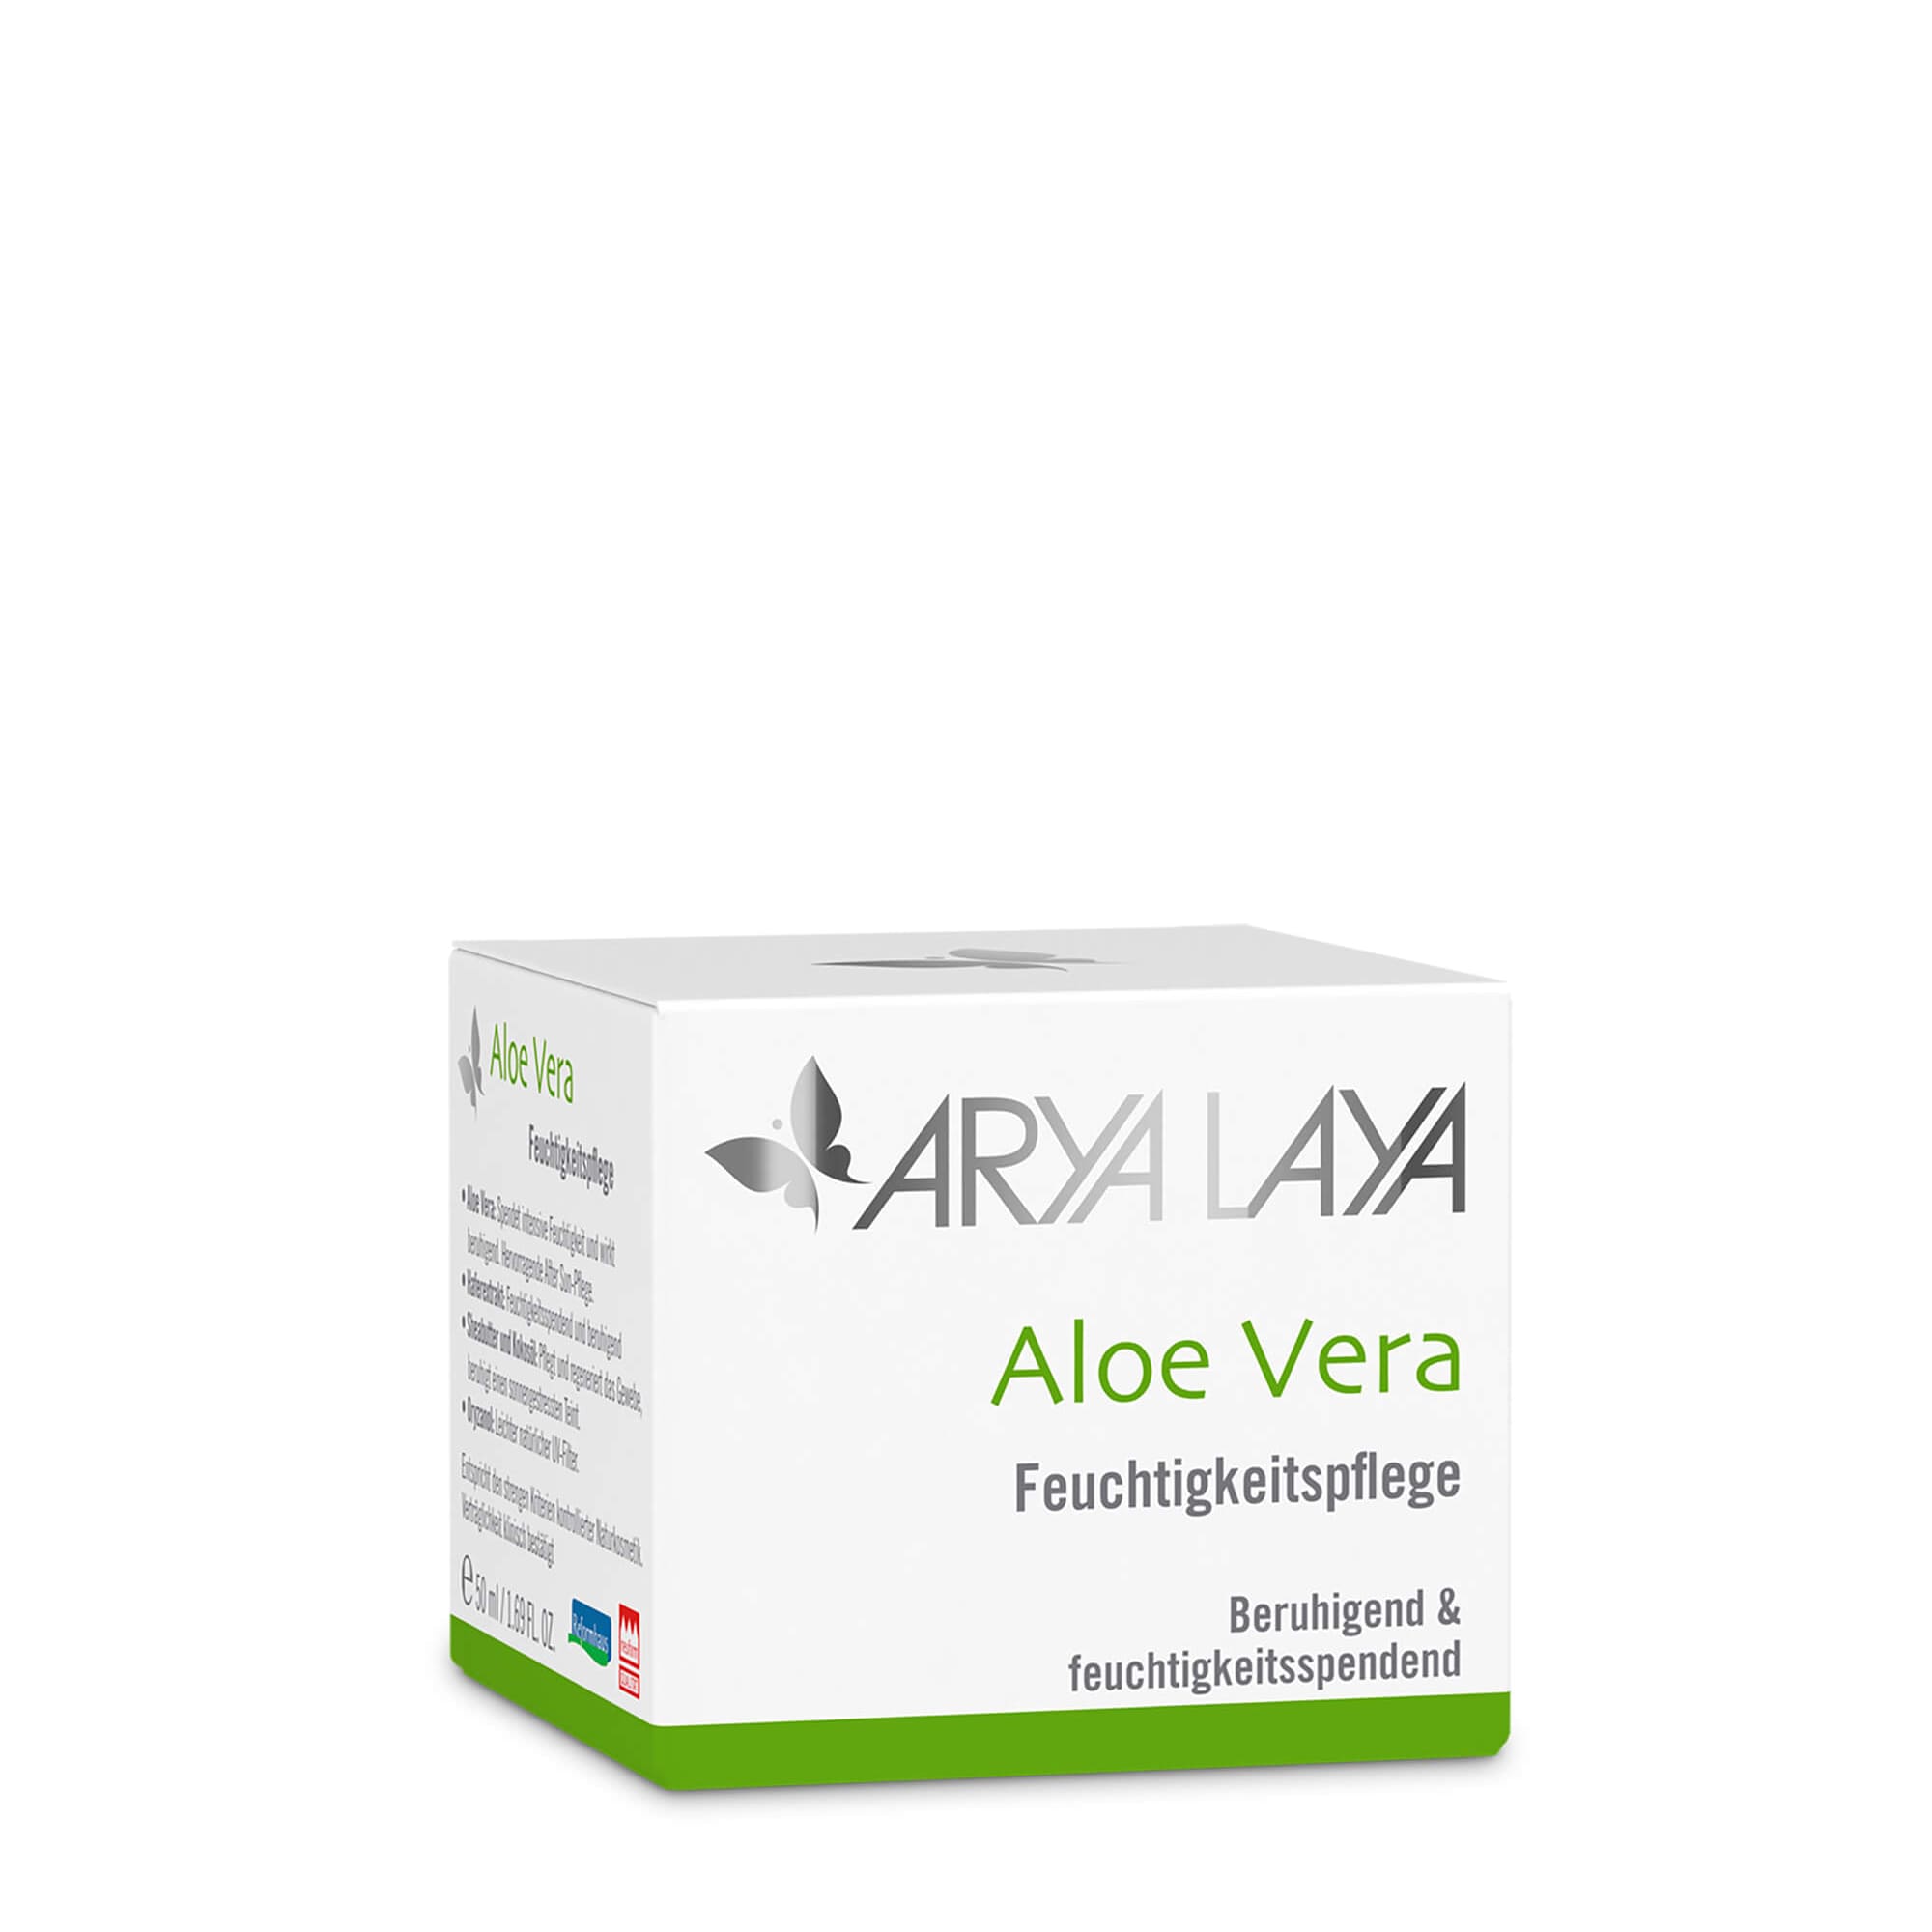 Faltschachtel mit der ARYA LAYA Aloe Vera Feuchtigkeitspflege, 50 ml